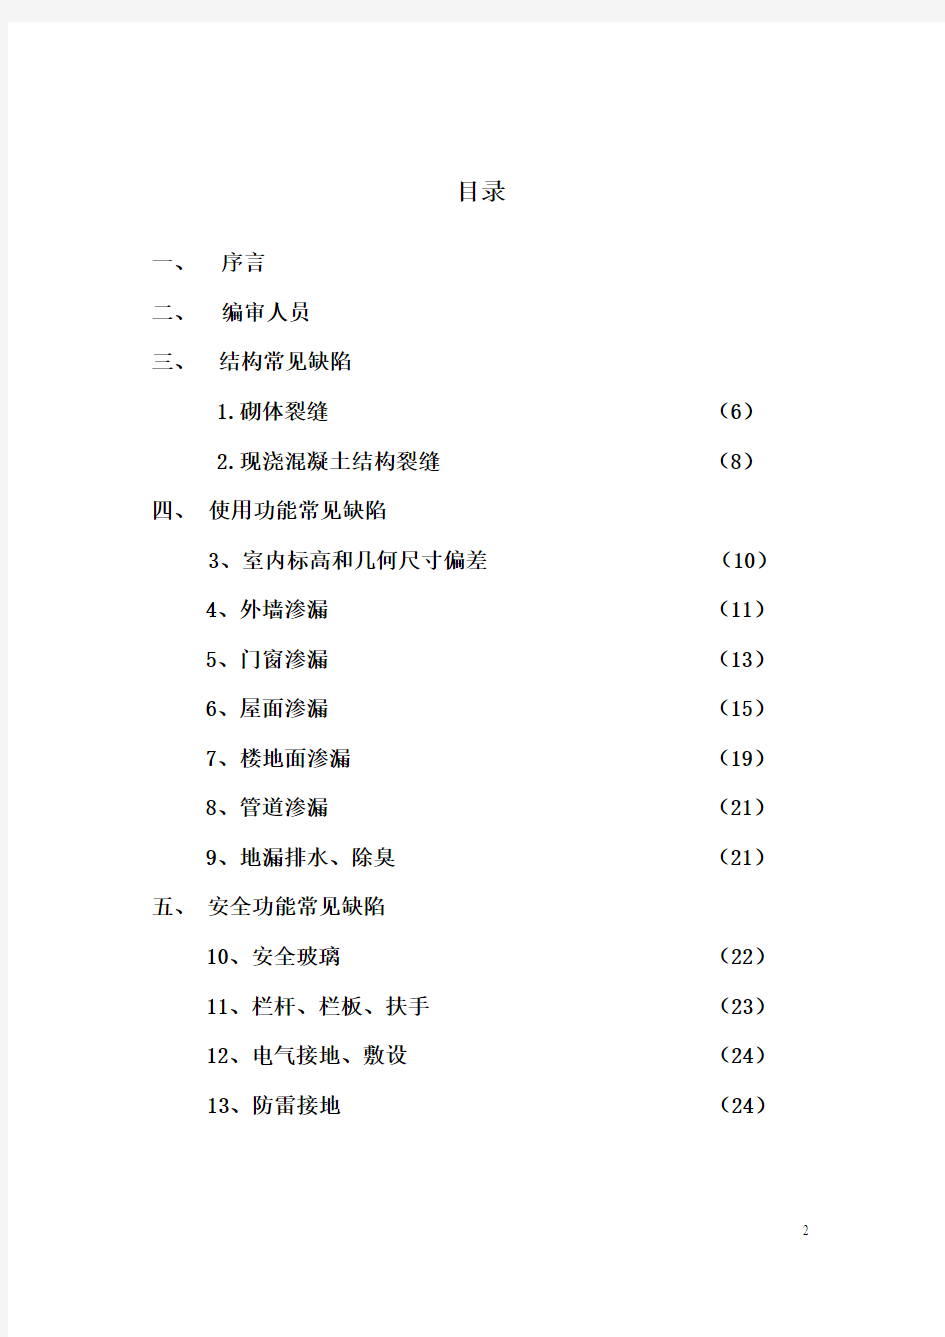 杭州市住宅工程常见质量缺陷防治措施100条(试行)